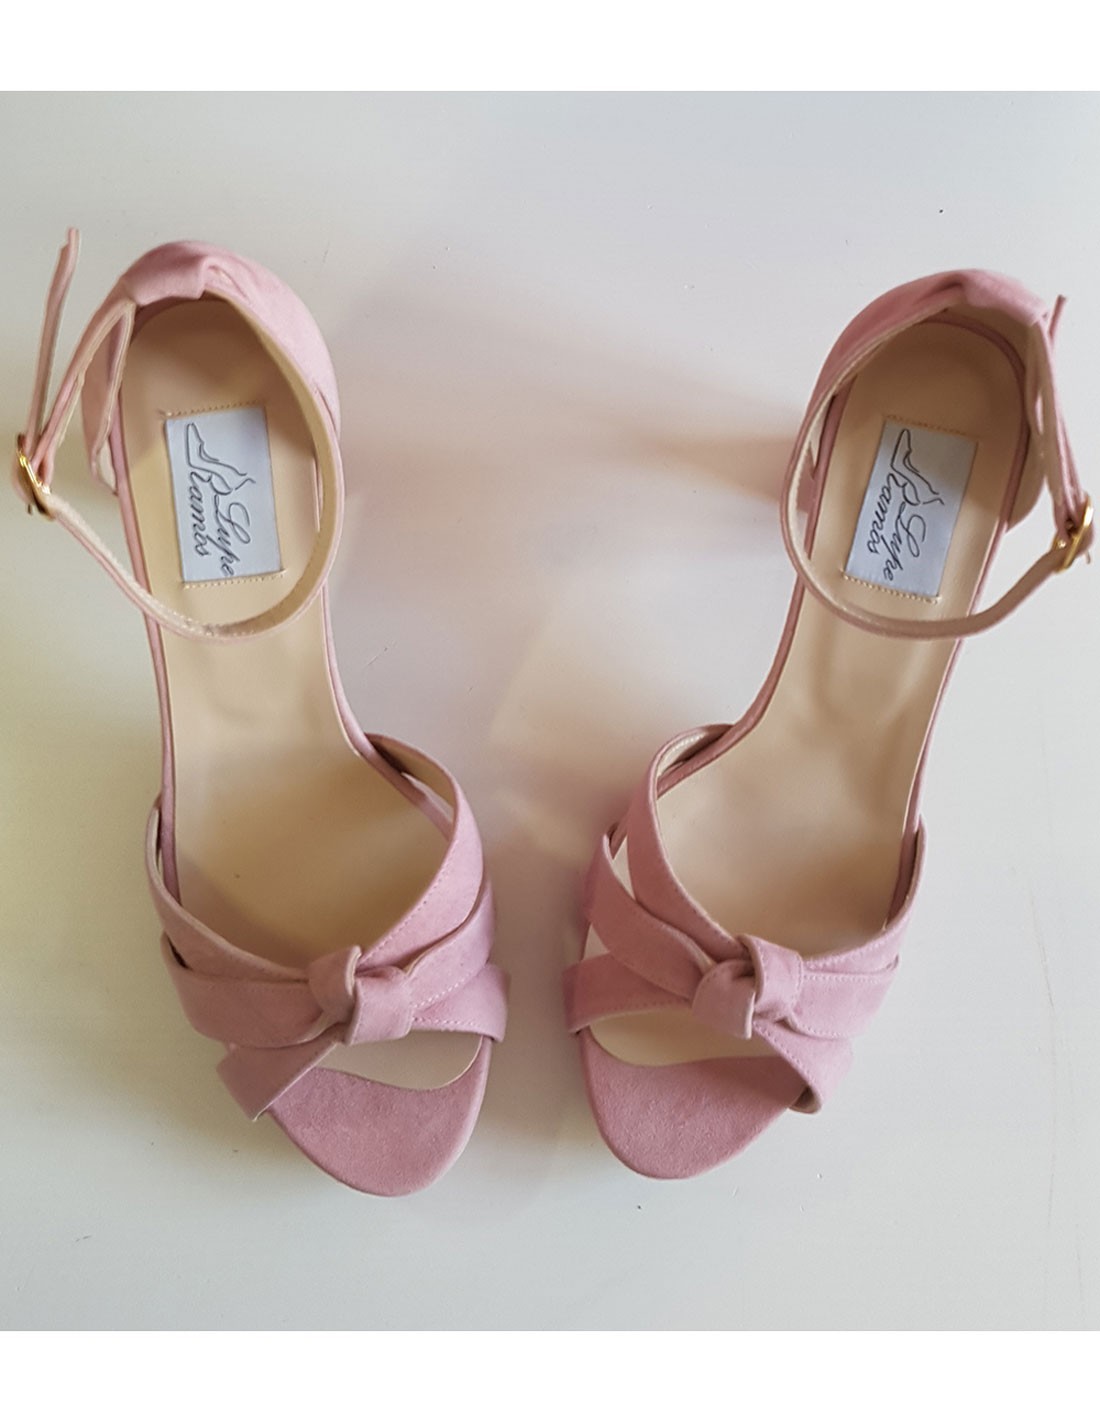 Inconsciente Telégrafo carga Zapatos de fiesta con tejido de ante rosa | INVITADISIMA